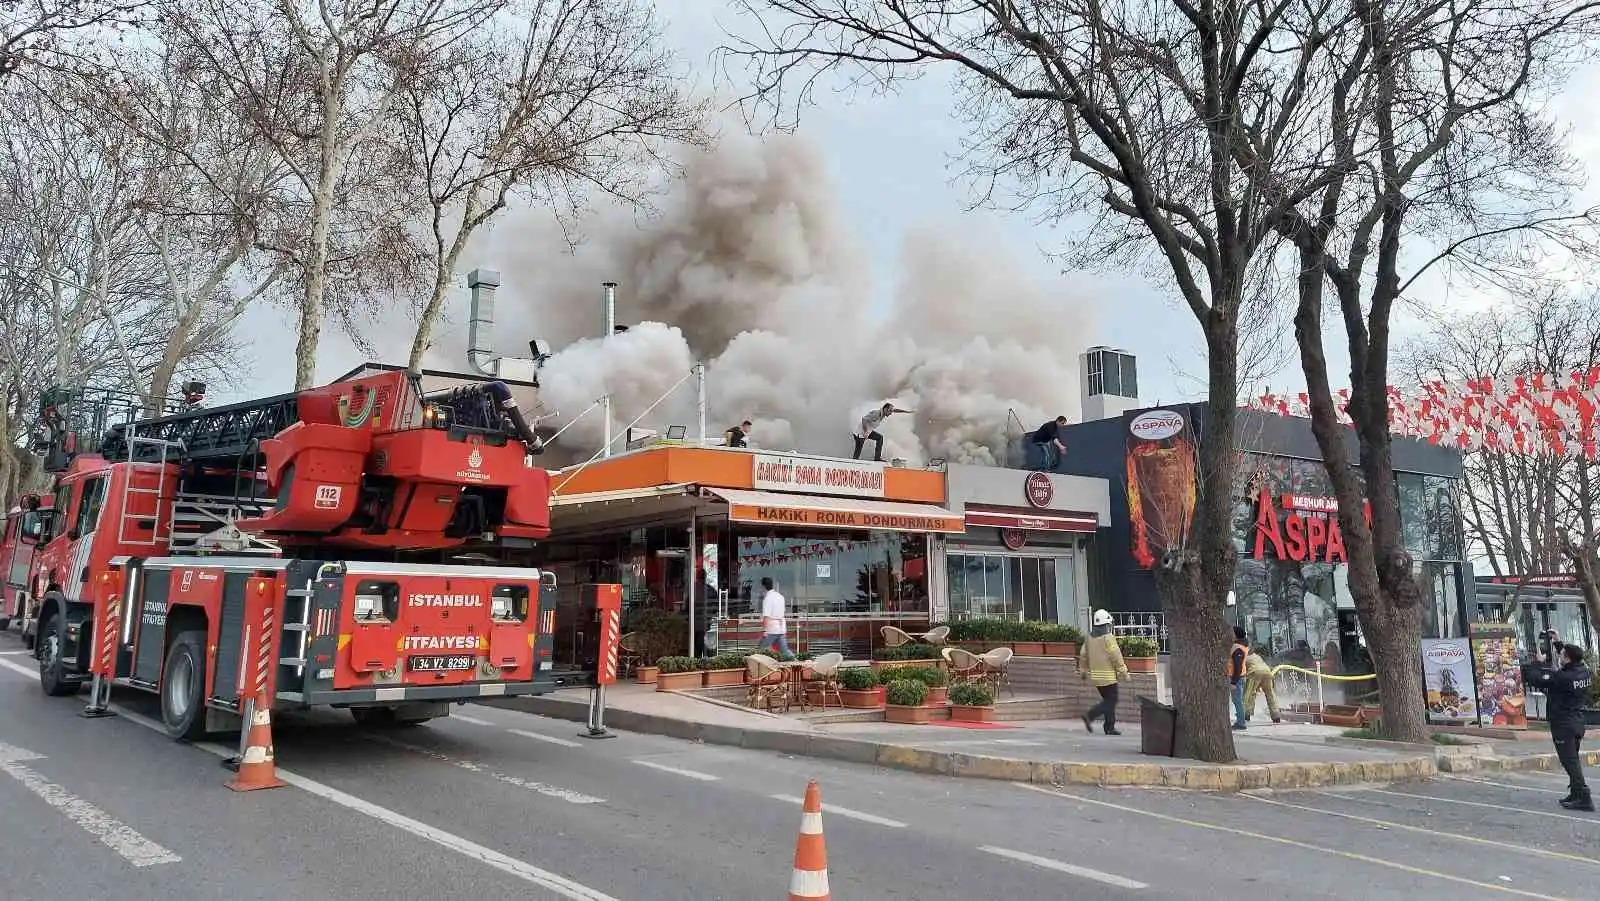 Florya'da restoranın bacasındaki yangın yan restorana sıçradı
